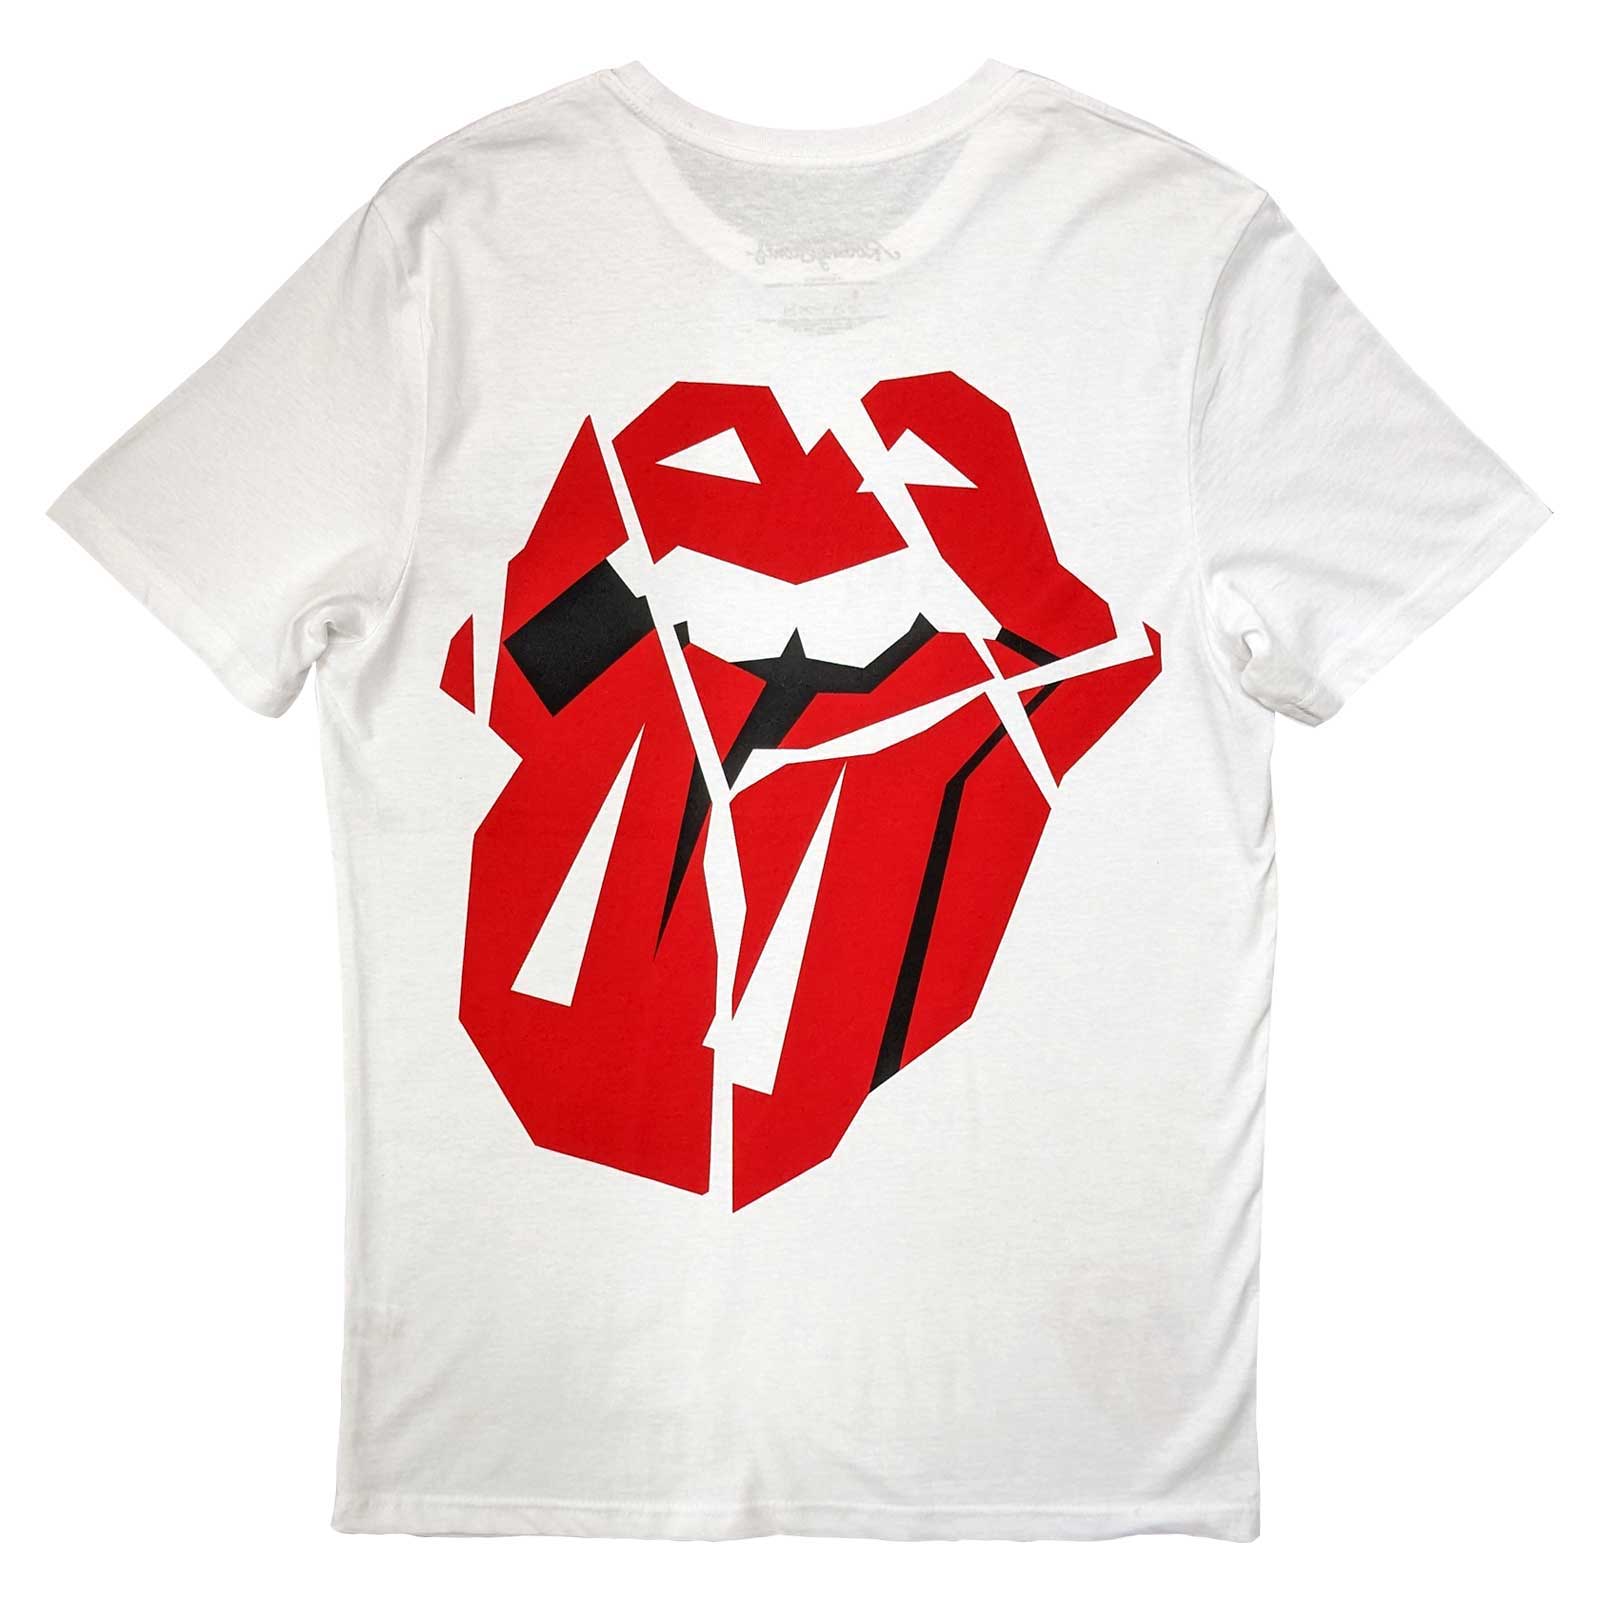 T-shirt pour adulte des Rolling Stones – Hackney Diamonds Lick (impression au dos) Blanc, design sous licence officielle